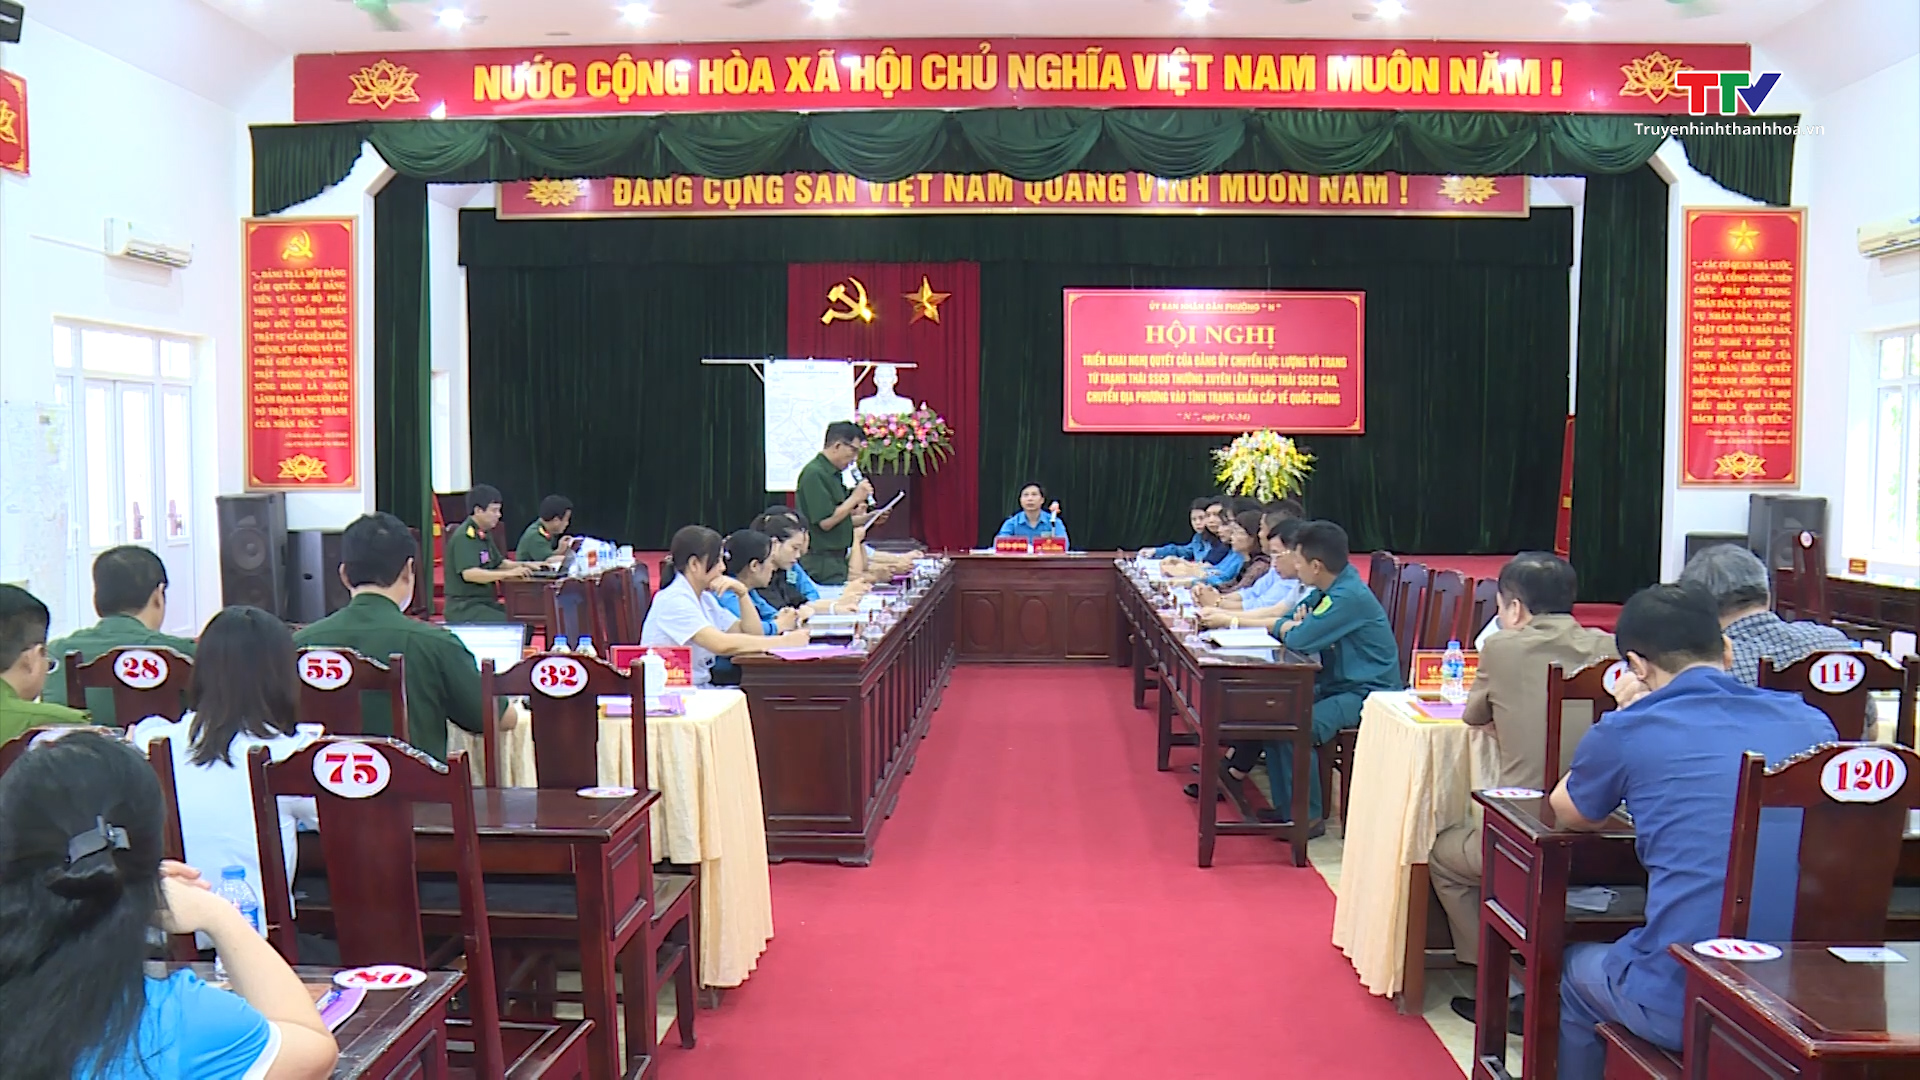 Tin tổng hợp hoạt động chính trị, kinh tế, văn hóa, xã hội trên địa bàn thành phố Thanh Hóa từ 21/9 - 27/9 - Ảnh 3.